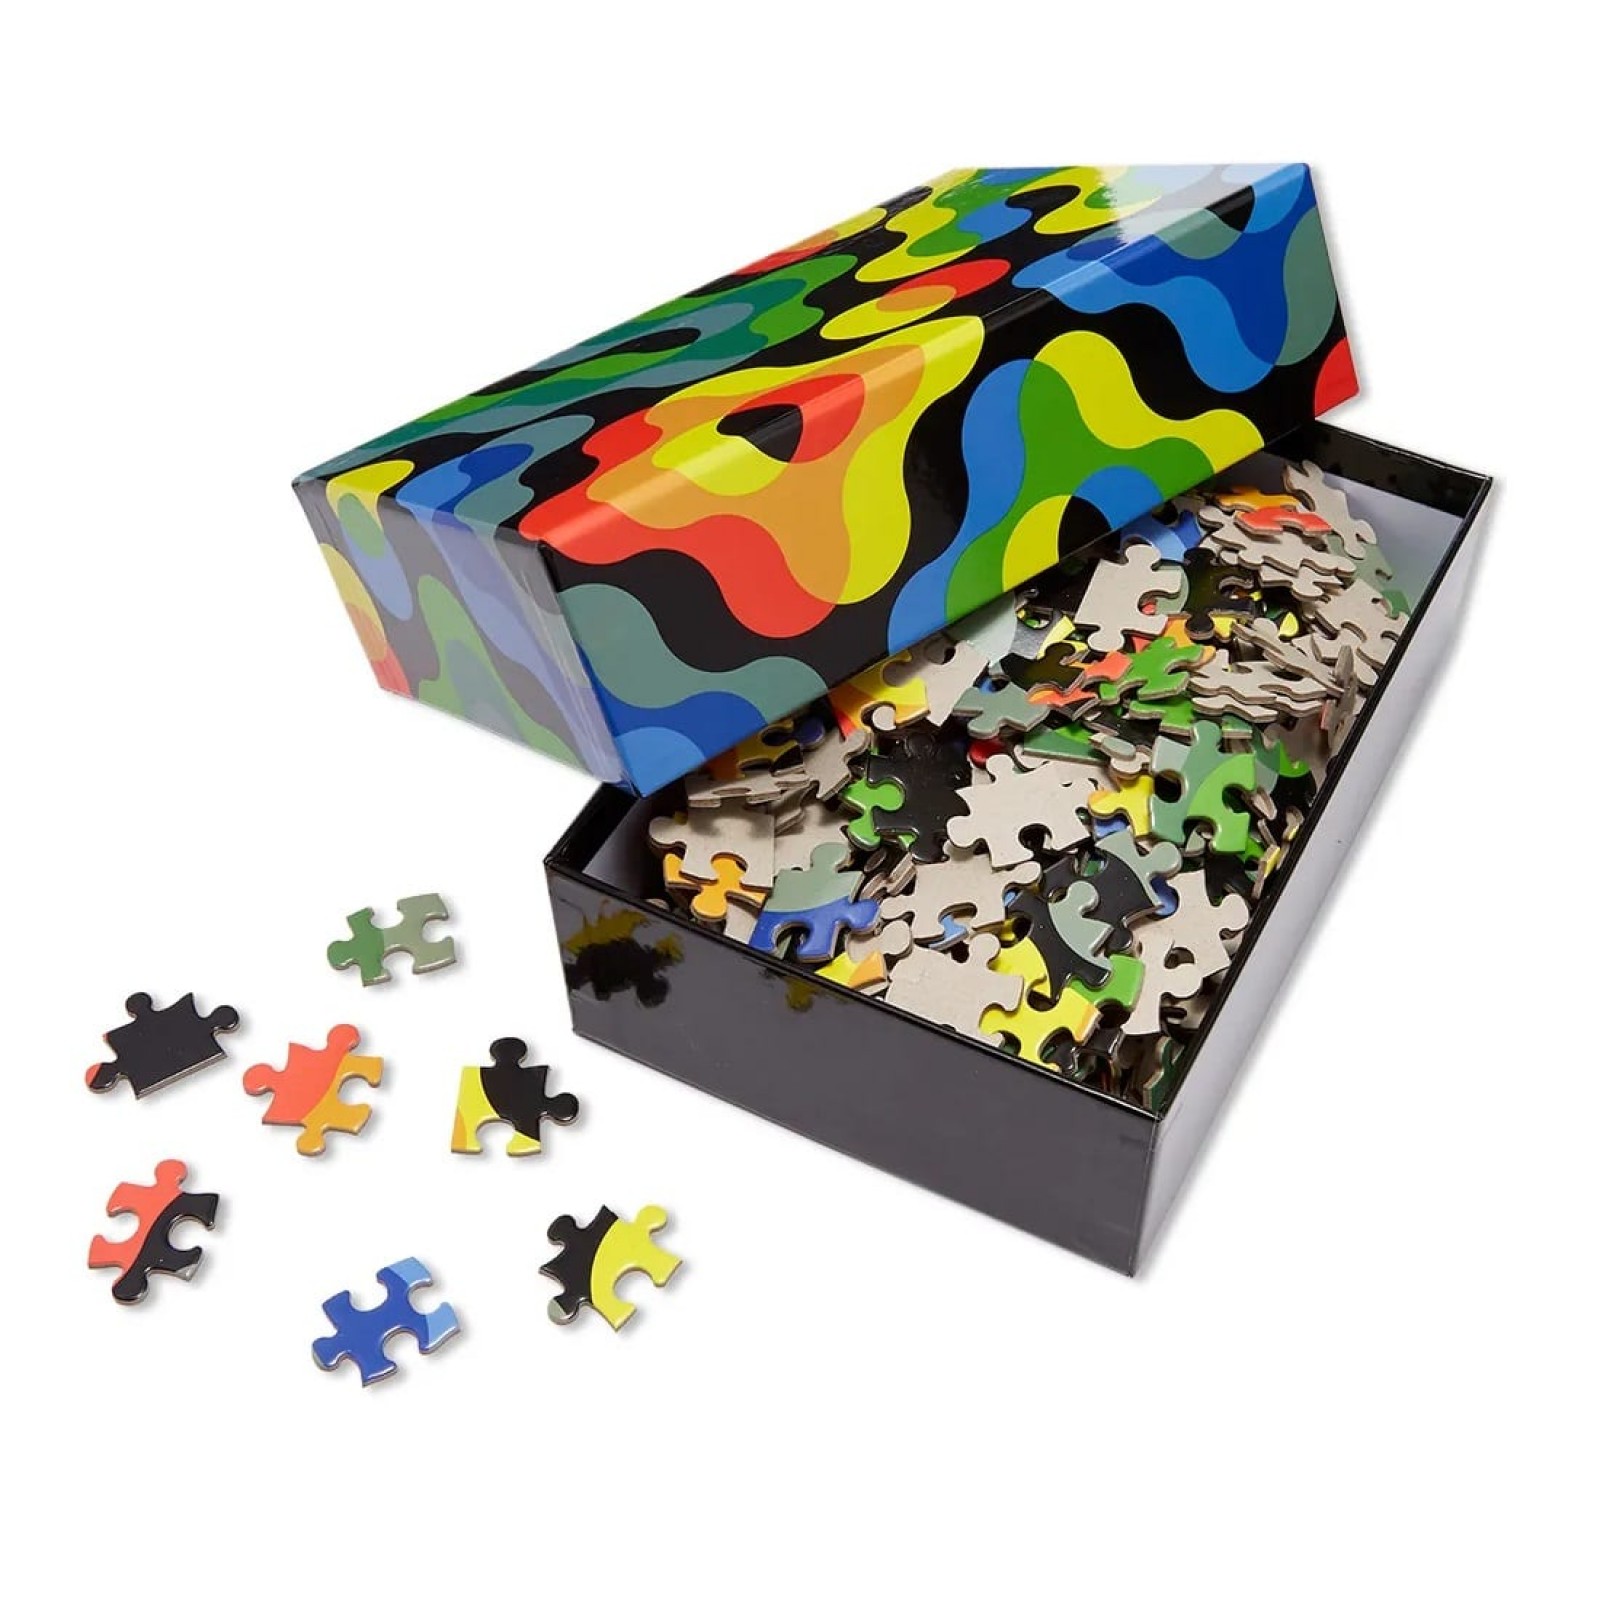 Pattern Puzzle - Arc - 500 pieces by Dusen Dusen Areaware